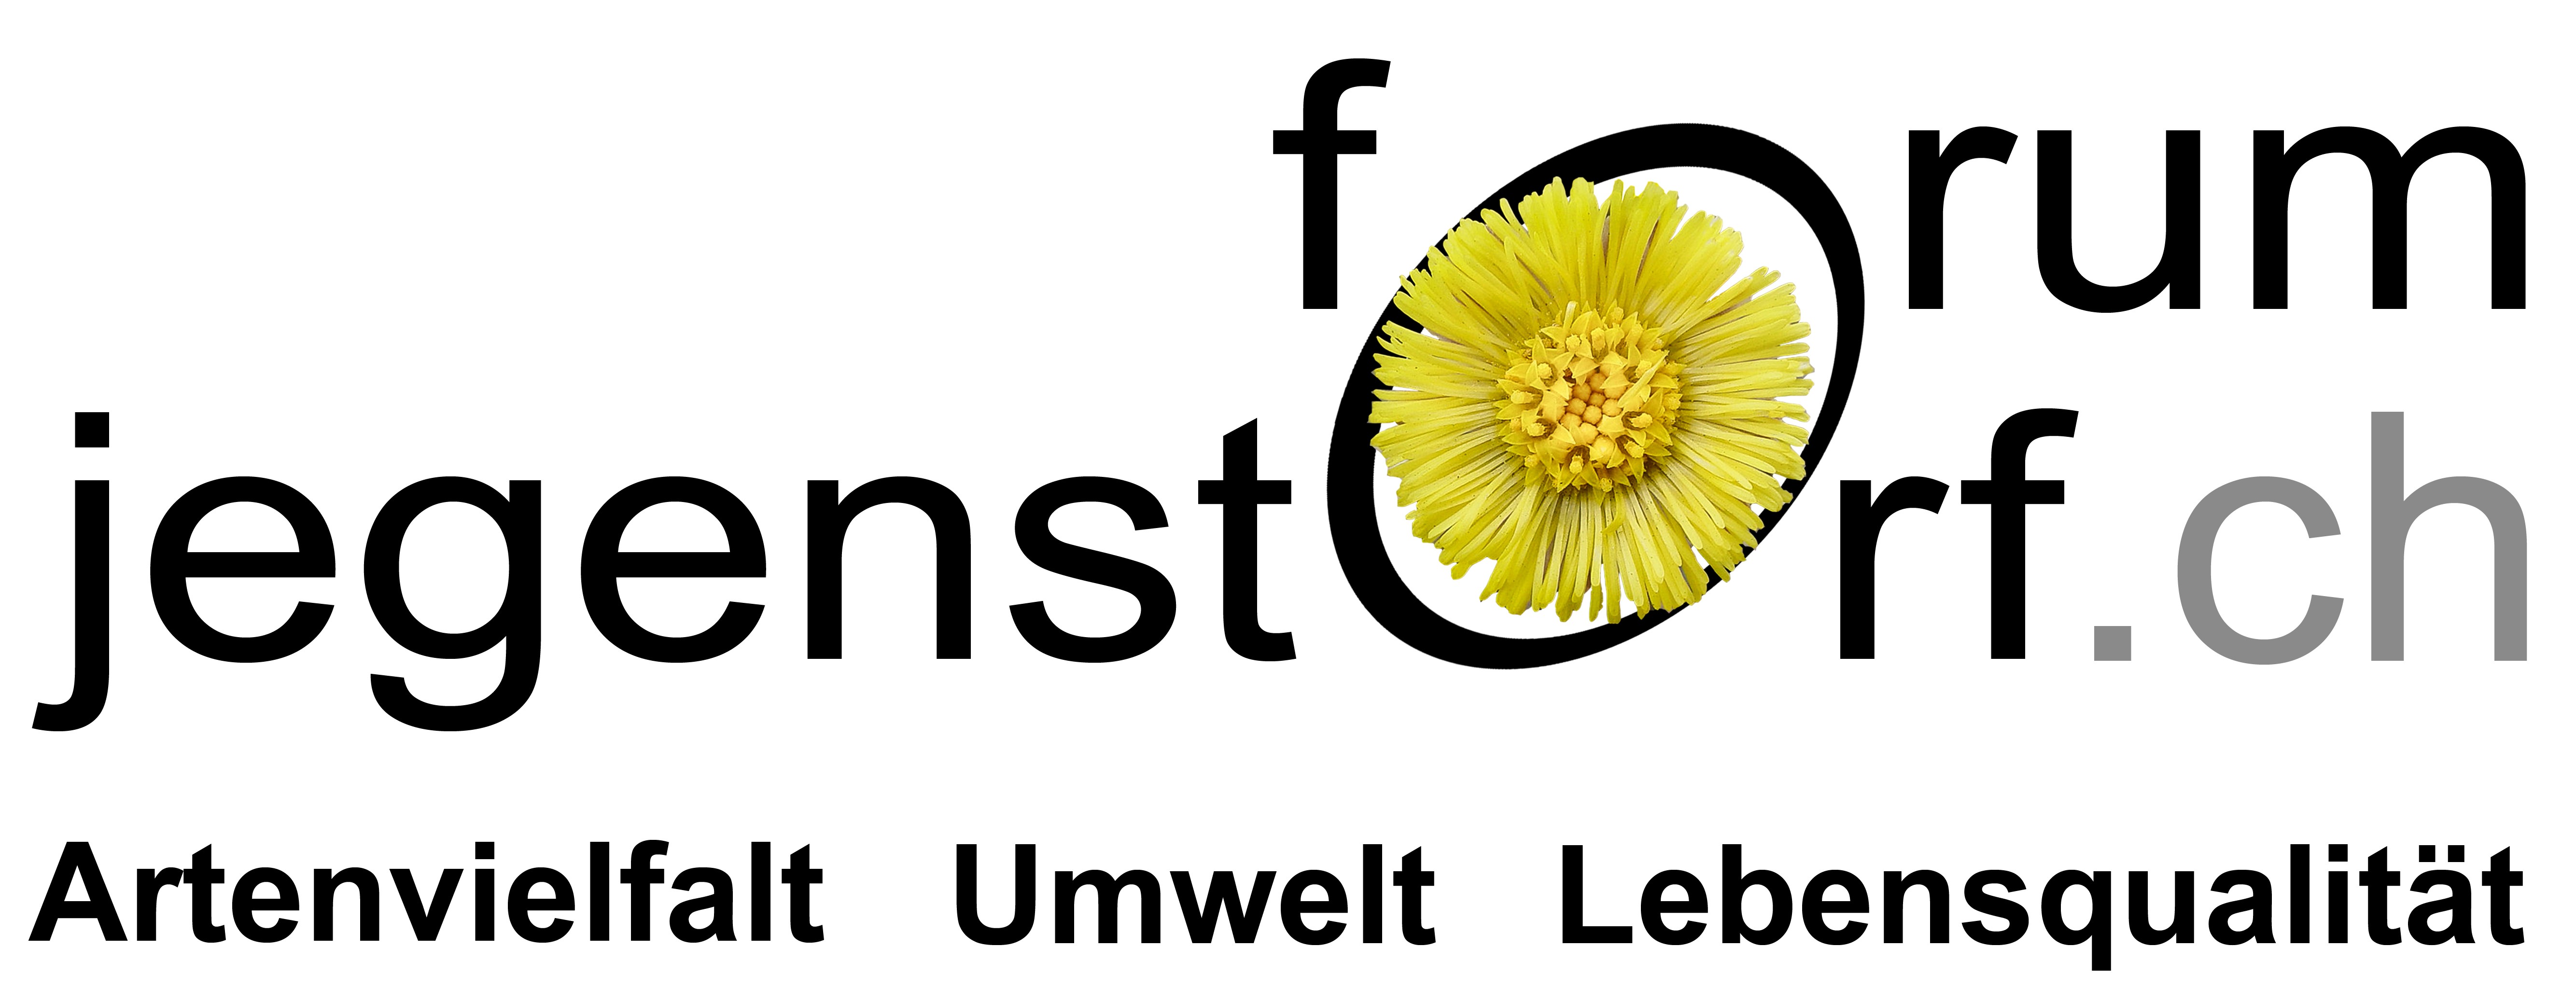 Logo - Forum Jegenstorf